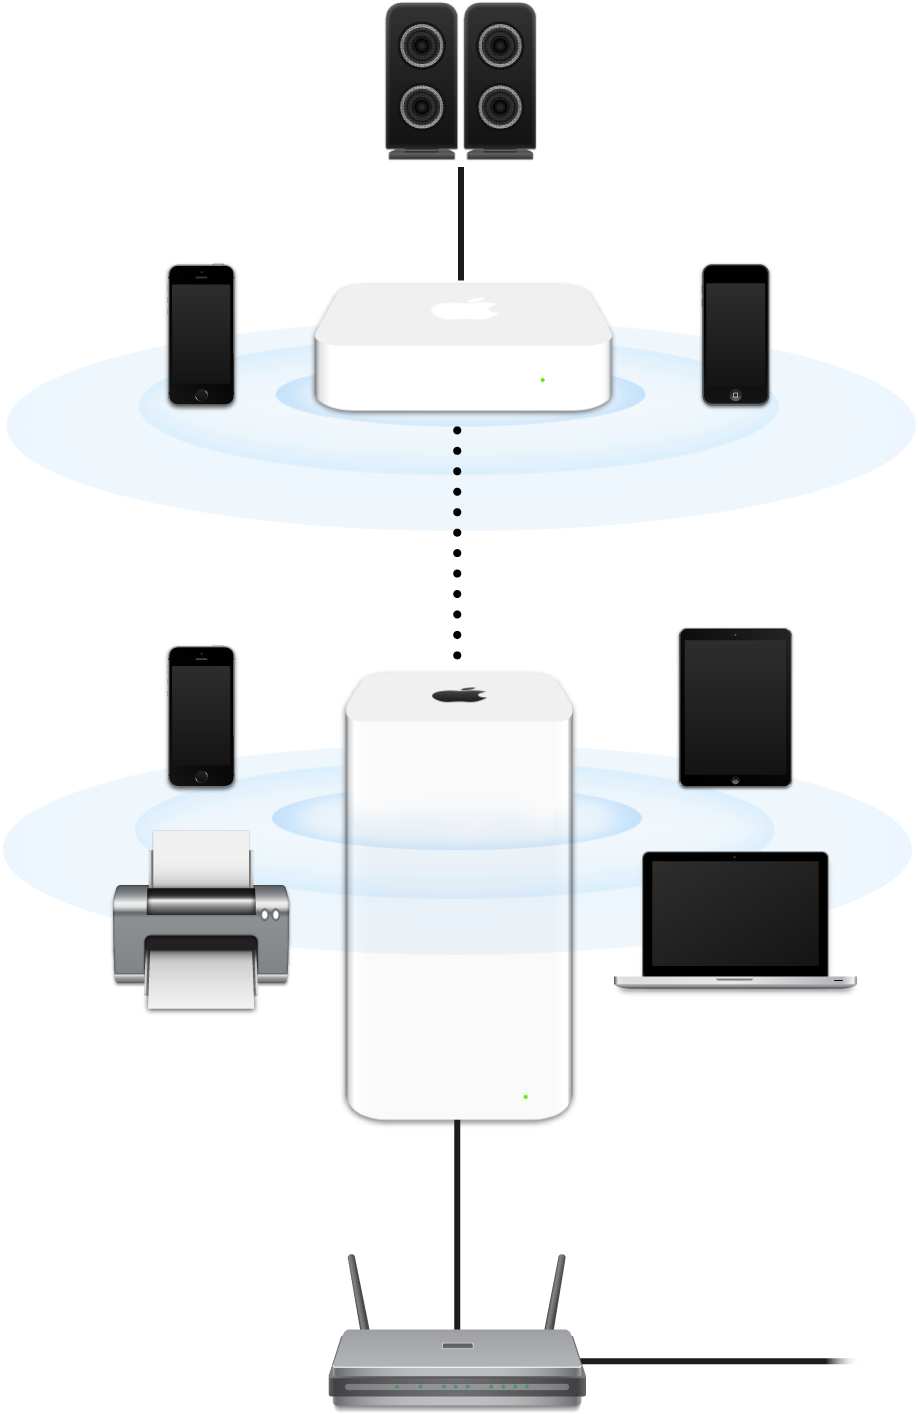 已扩展的网络，包括连接到调制解调器的 AirPort Extreme 和 AirPort Express 并传输到不同设备。